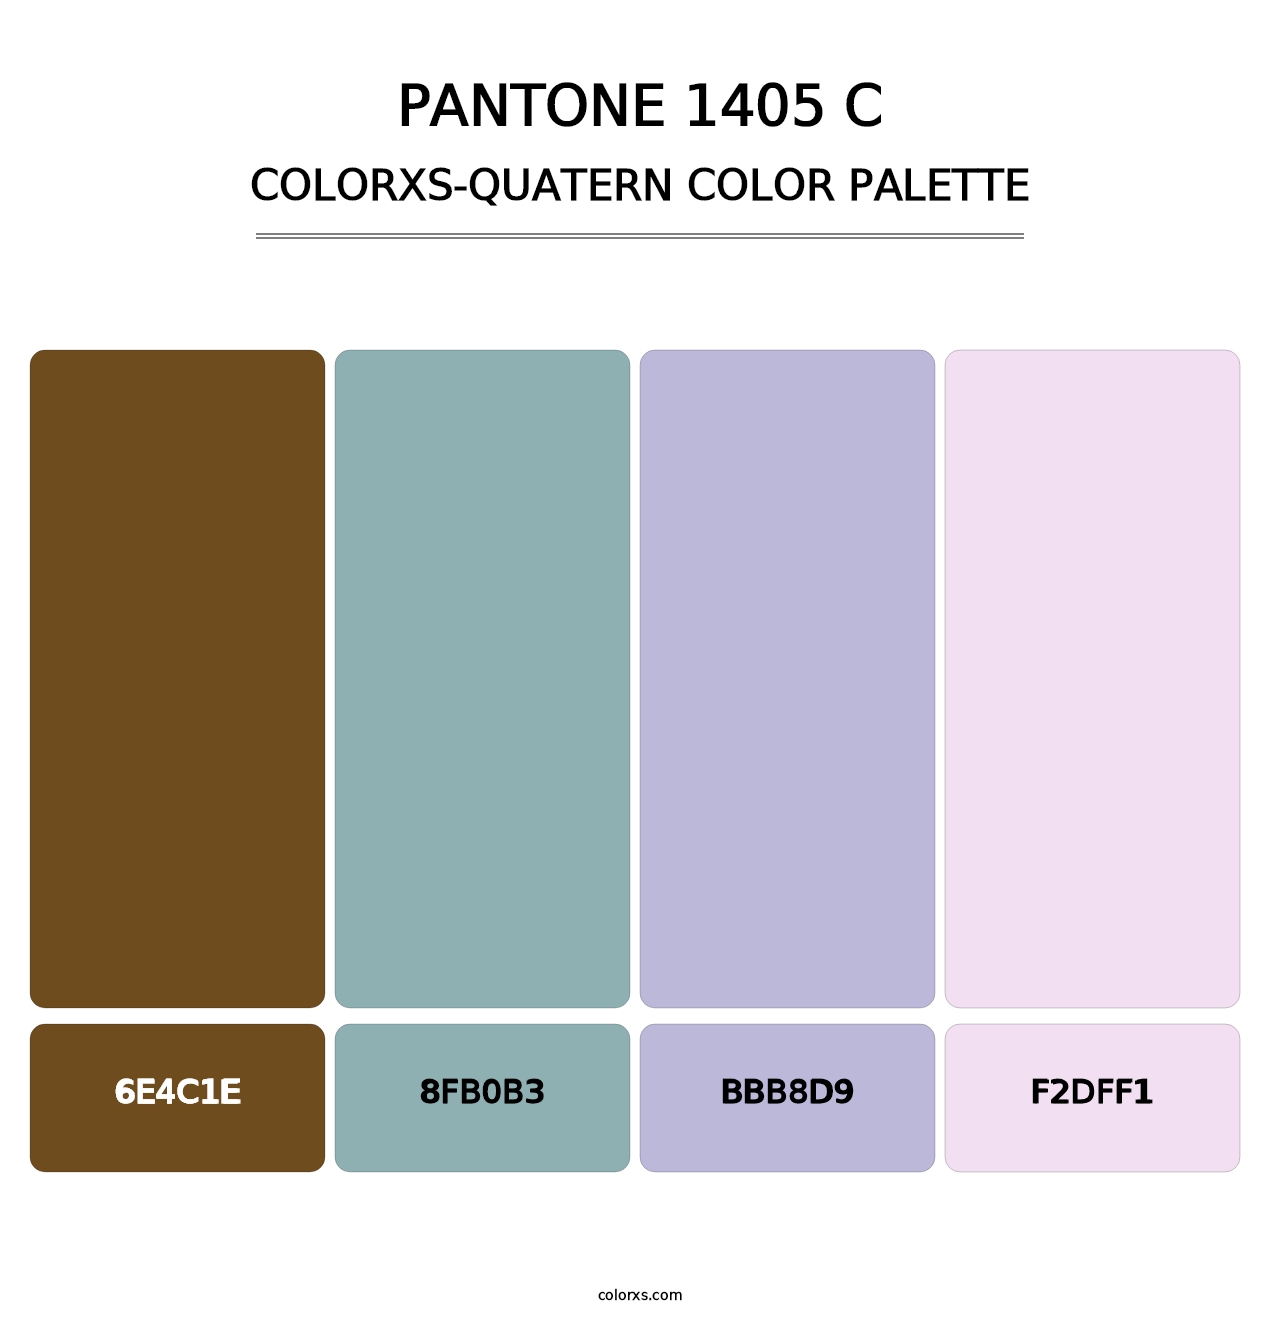 PANTONE 1405 C - Colorxs Quatern Palette